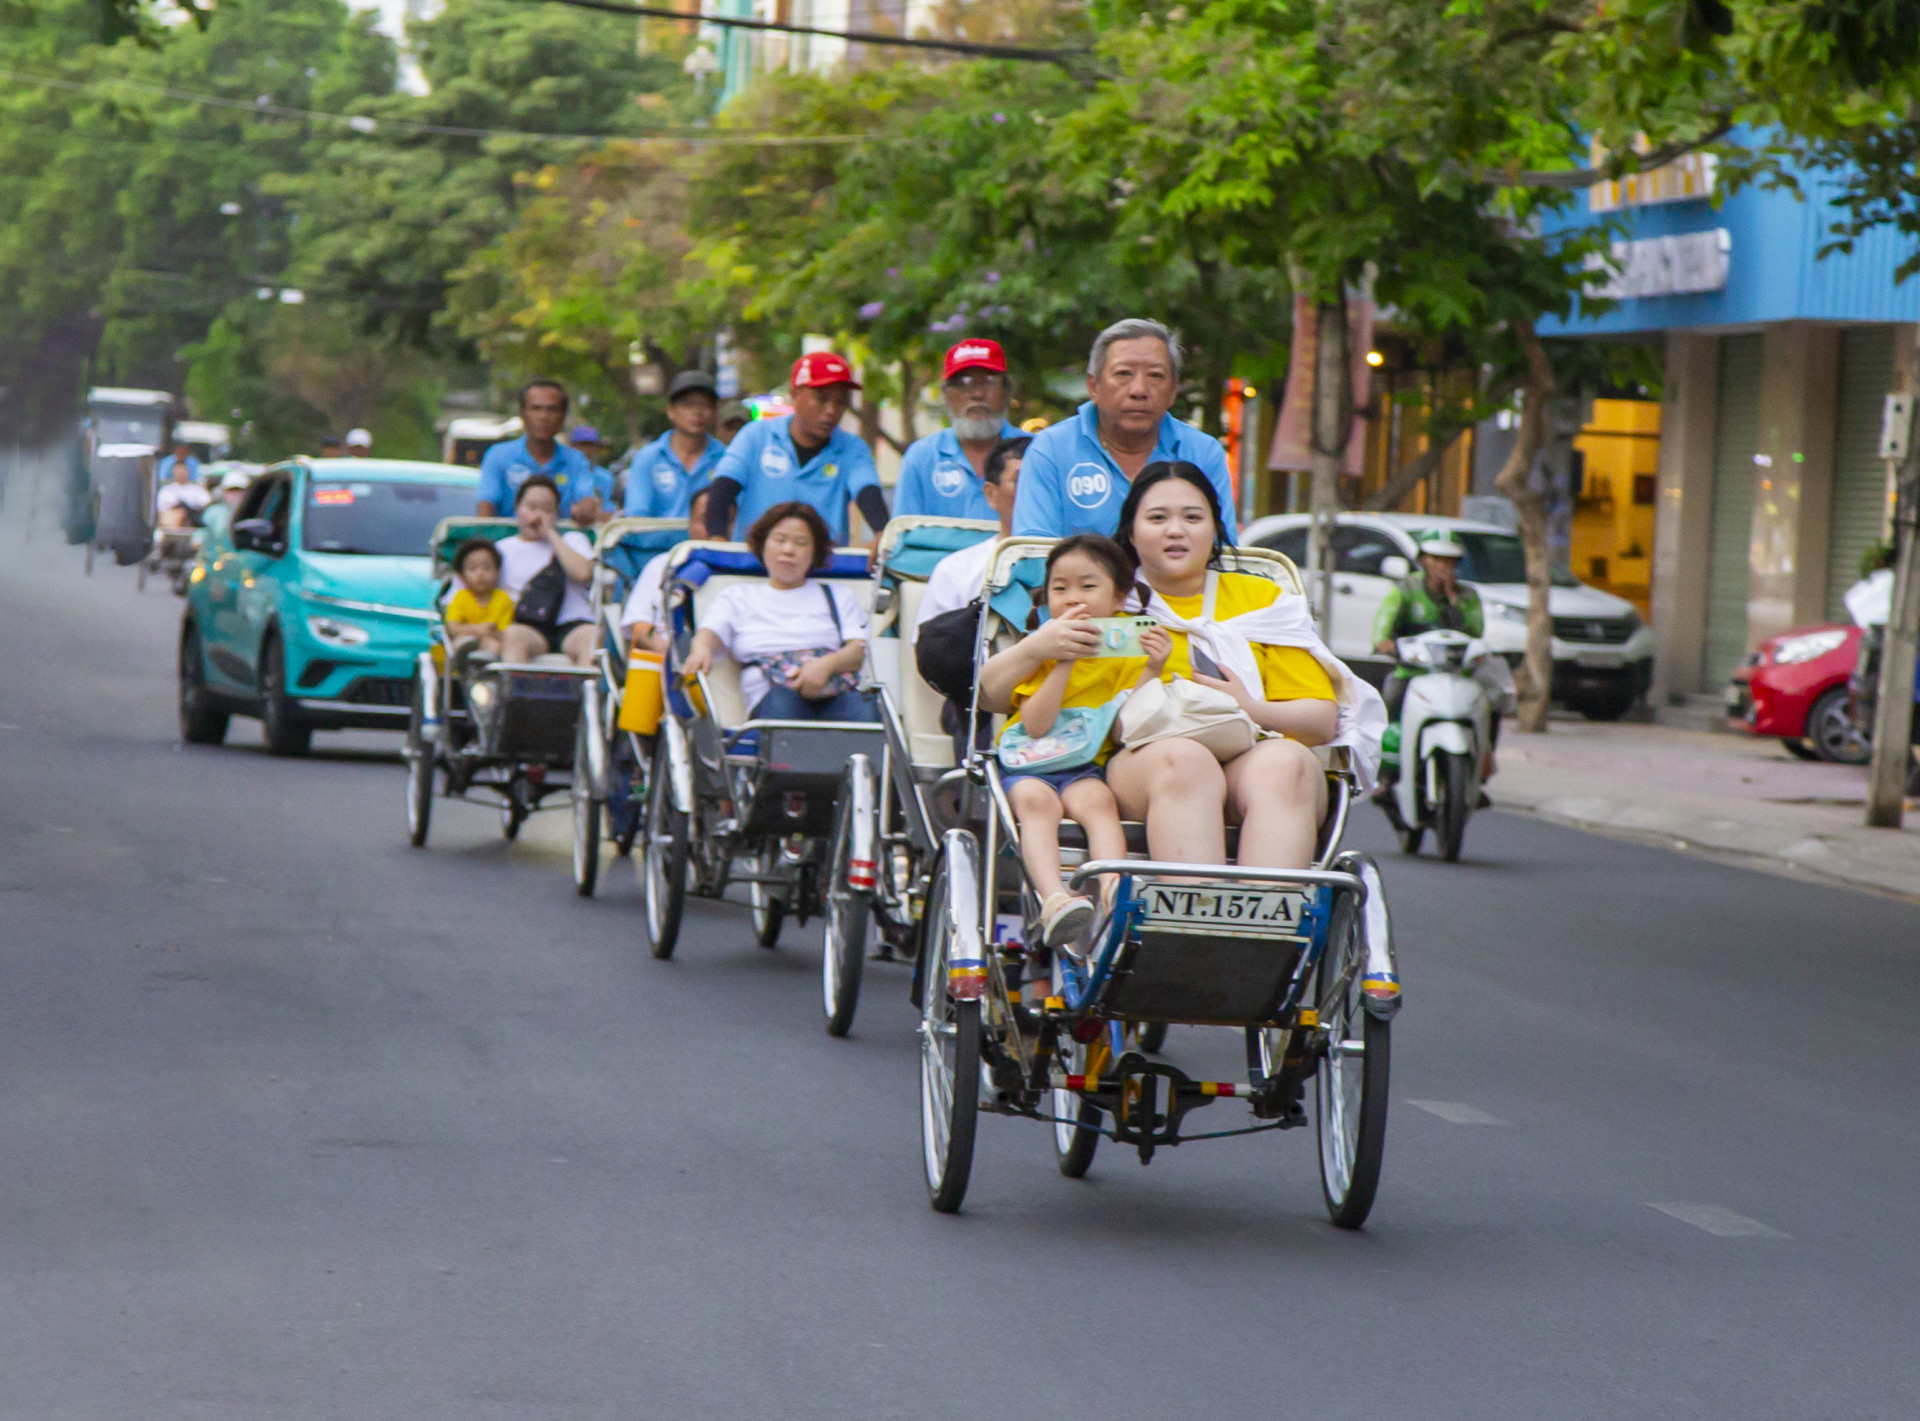 Chuyến xích lô rong ruổi qua các tuyến phố của TP. Nha Trang.
